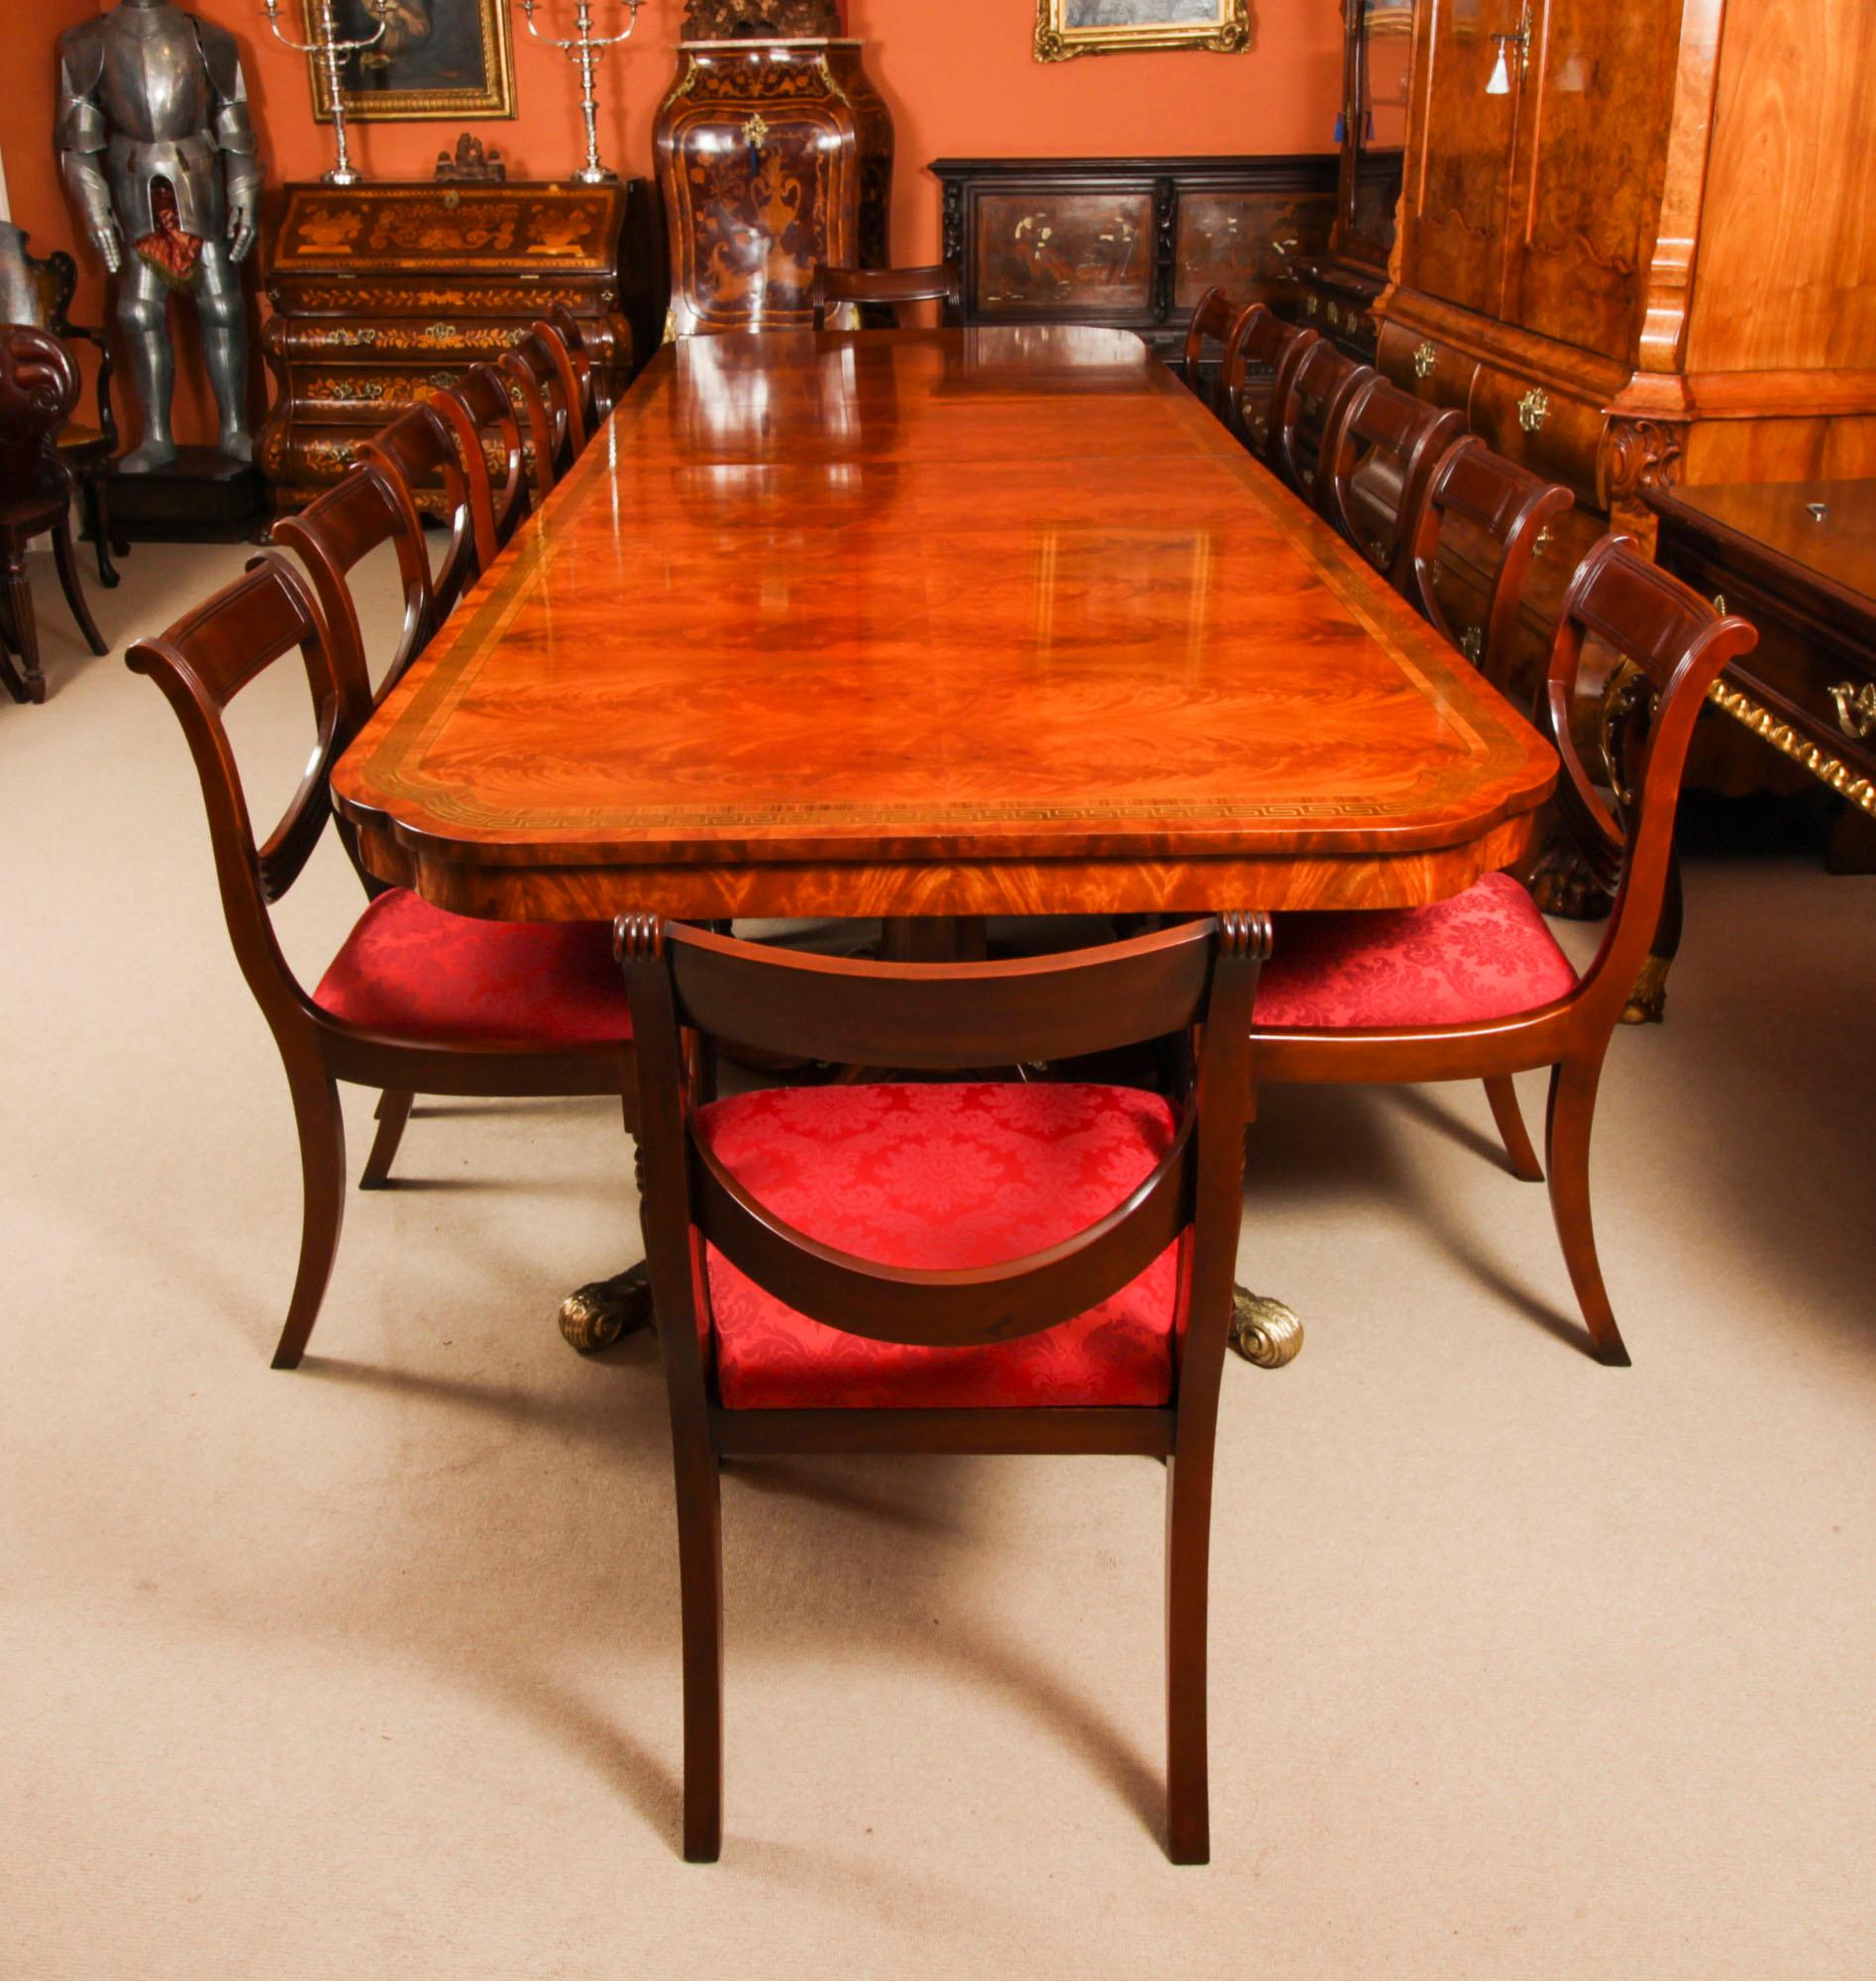 Voici un fabuleux ensemble de salle à manger Vintage Regency Revival comprenant une table à manger et un ensemble de quatorze chaises de salle à manger Regency Revival à dossier en accordéon, datant du milieu du 20ème siècle.

Cette fabuleuse